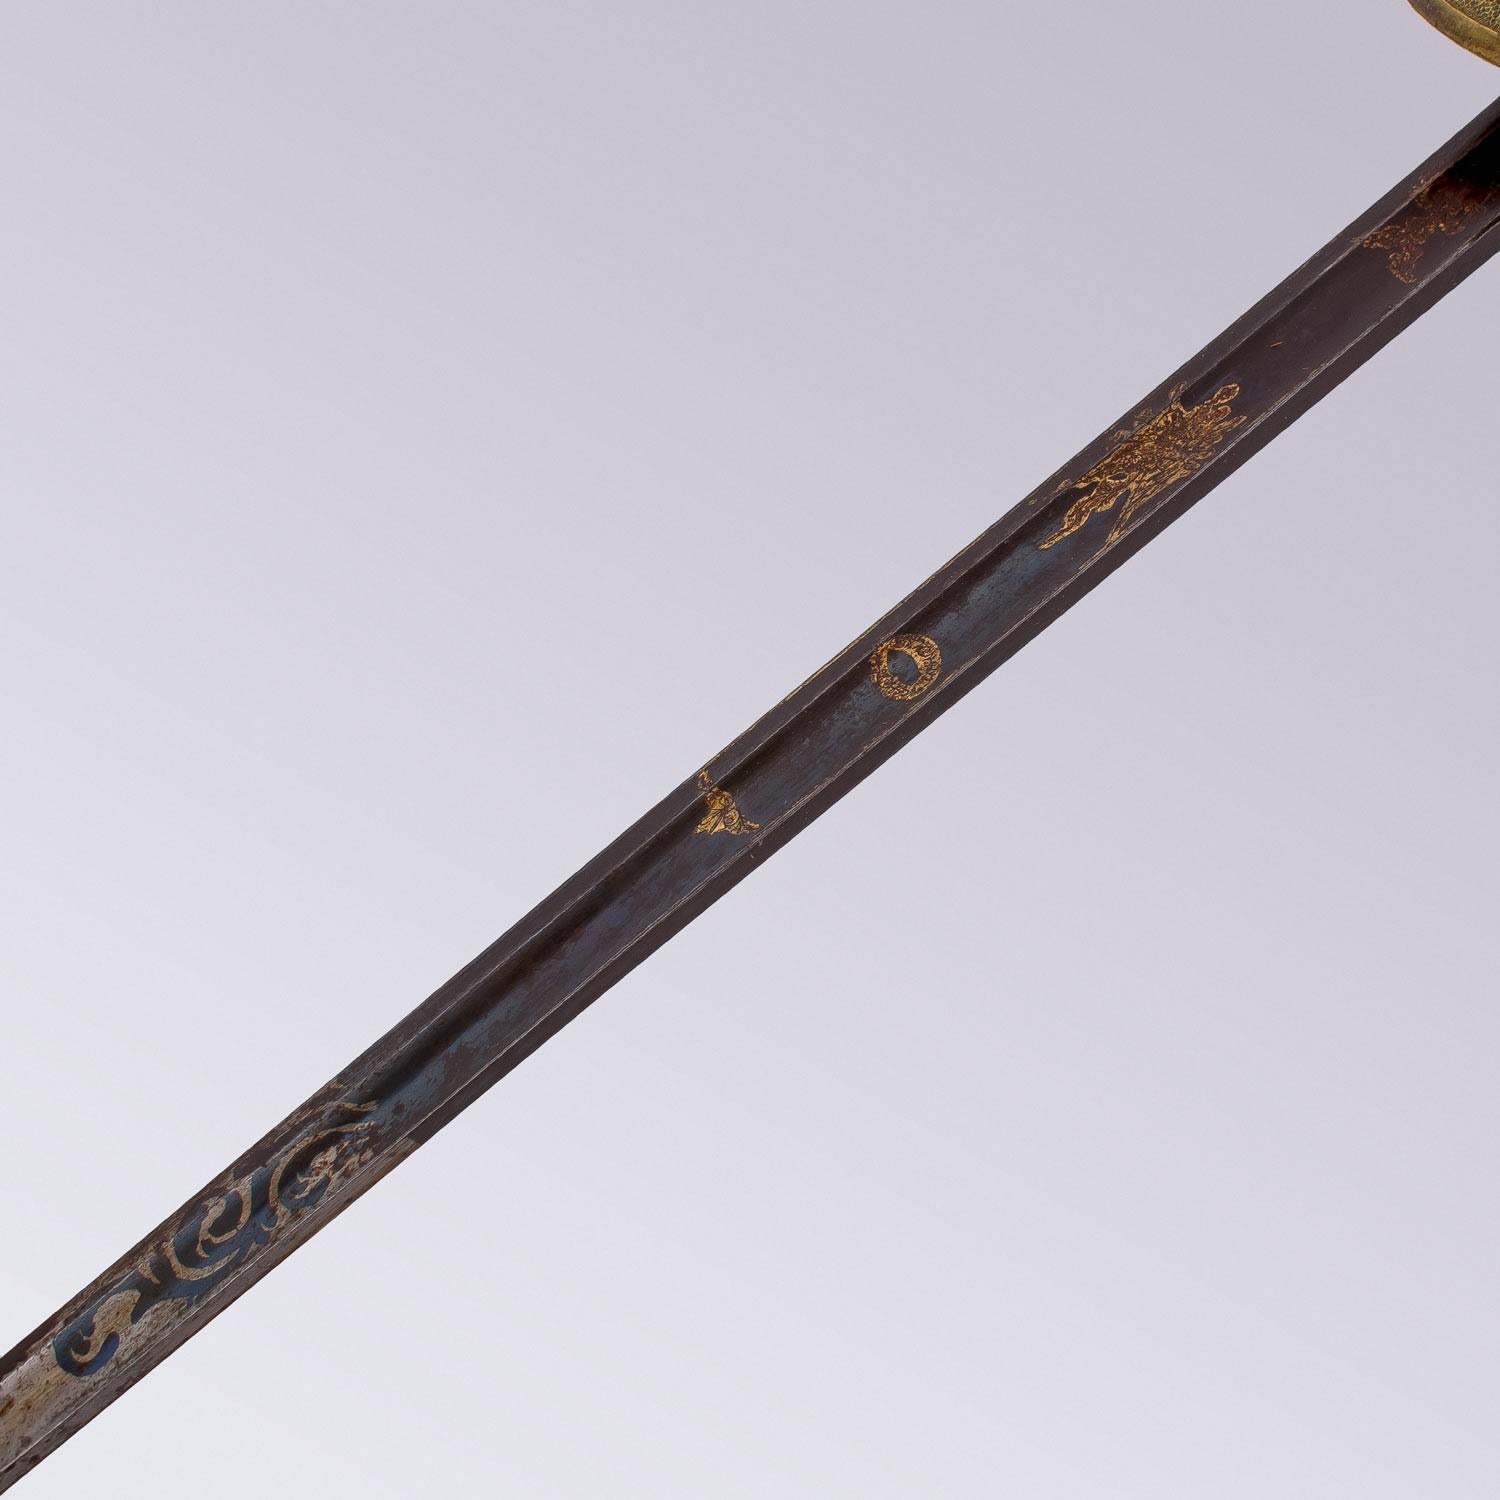 Metal Rare AMERICAN OFFICER'S SWORD - pre Civil War